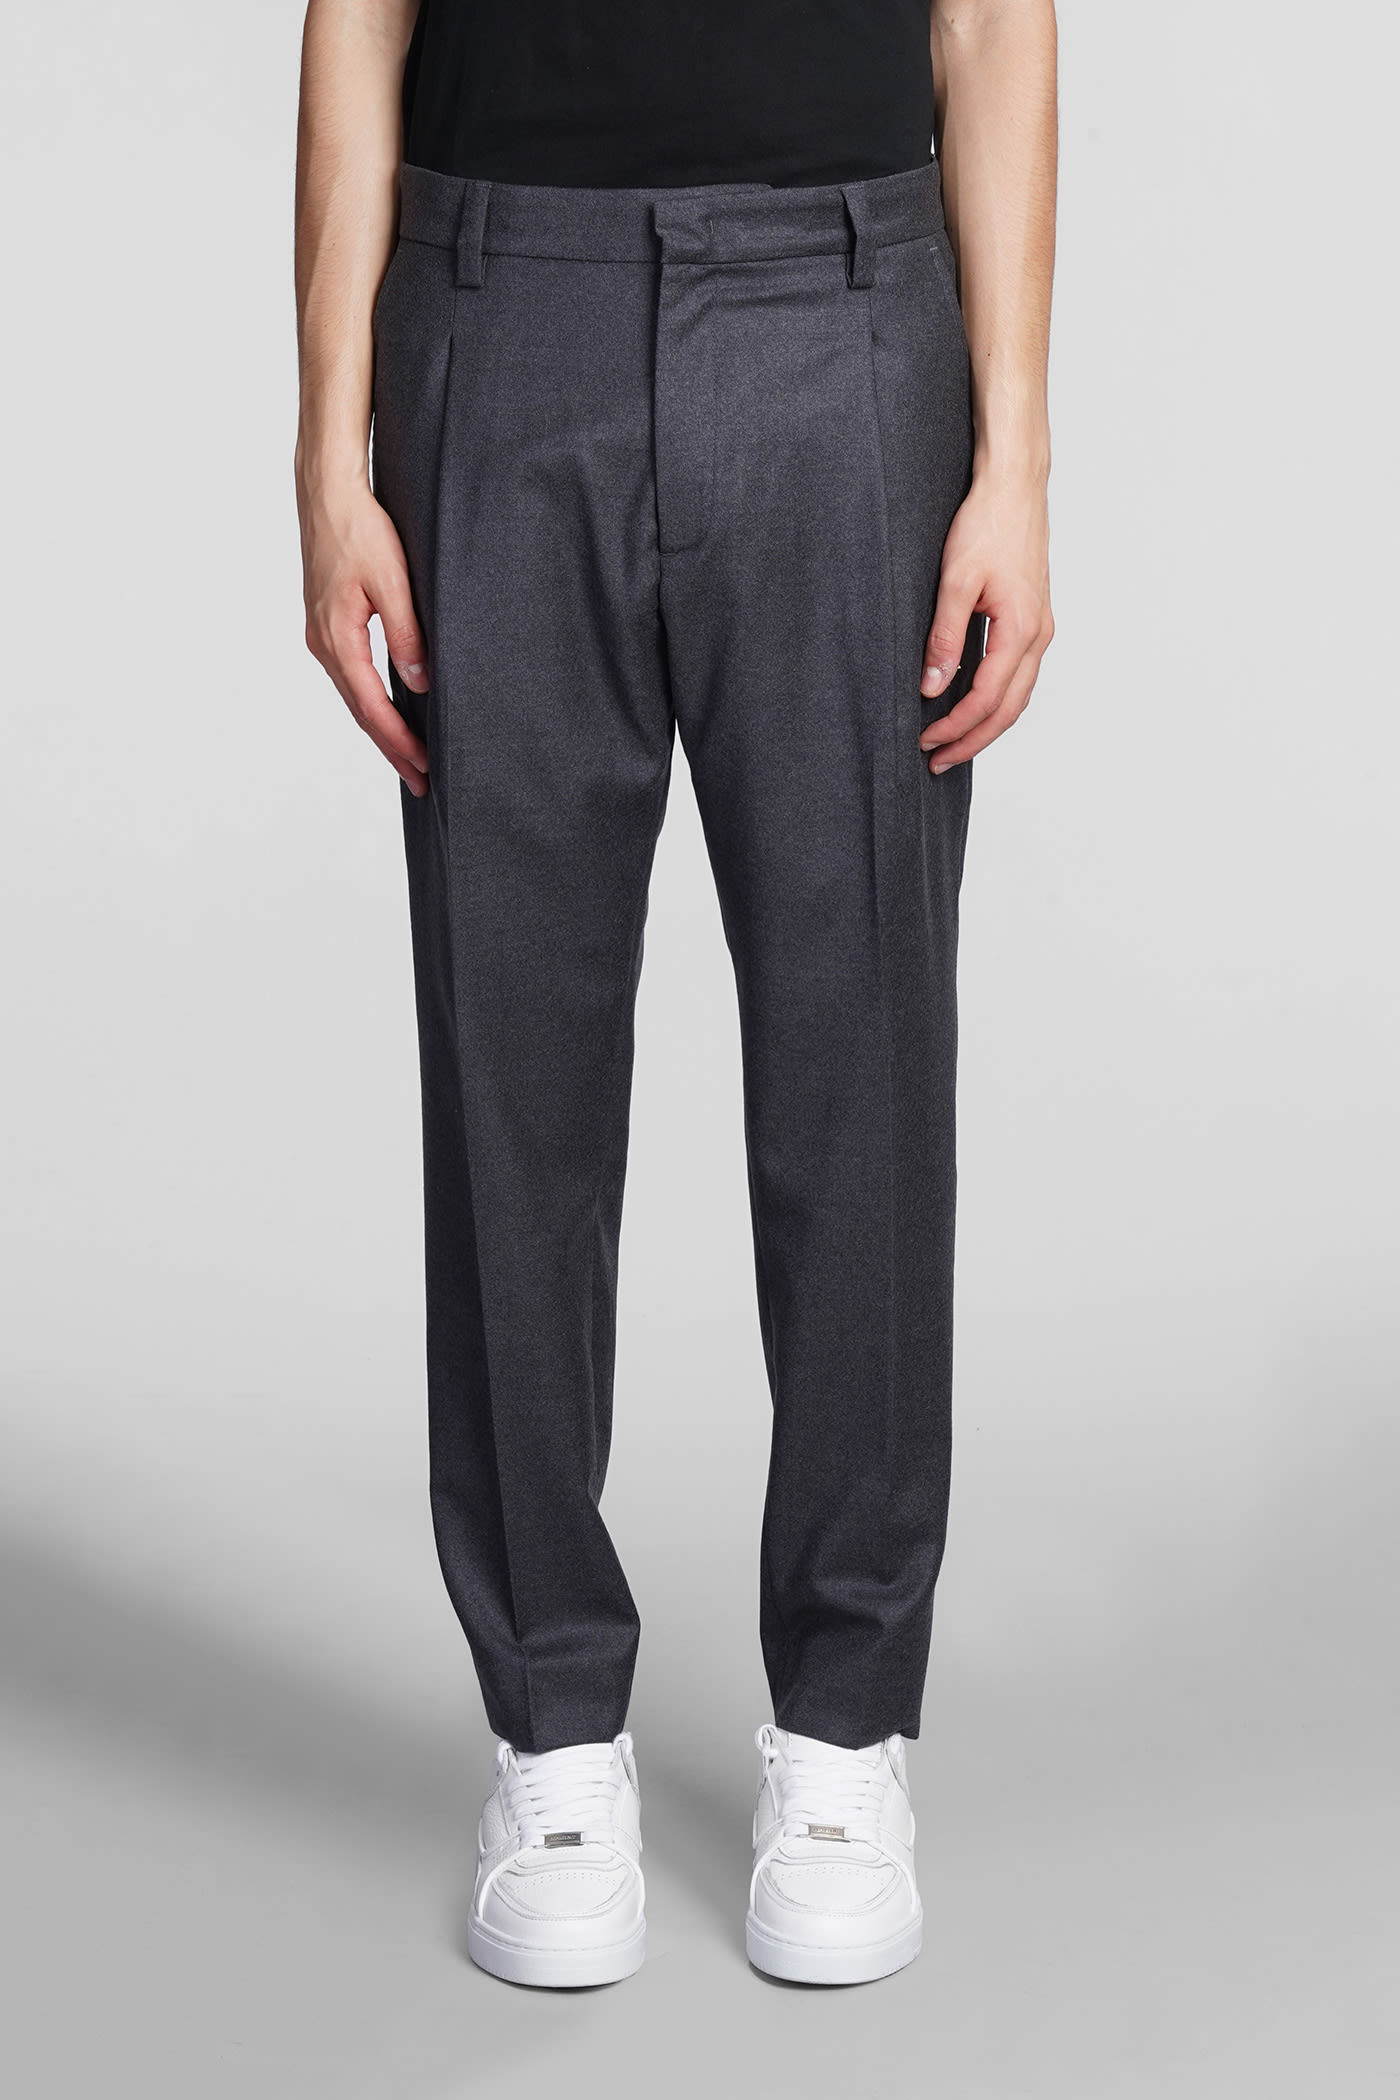 Low Brand Pants In Grey Wool